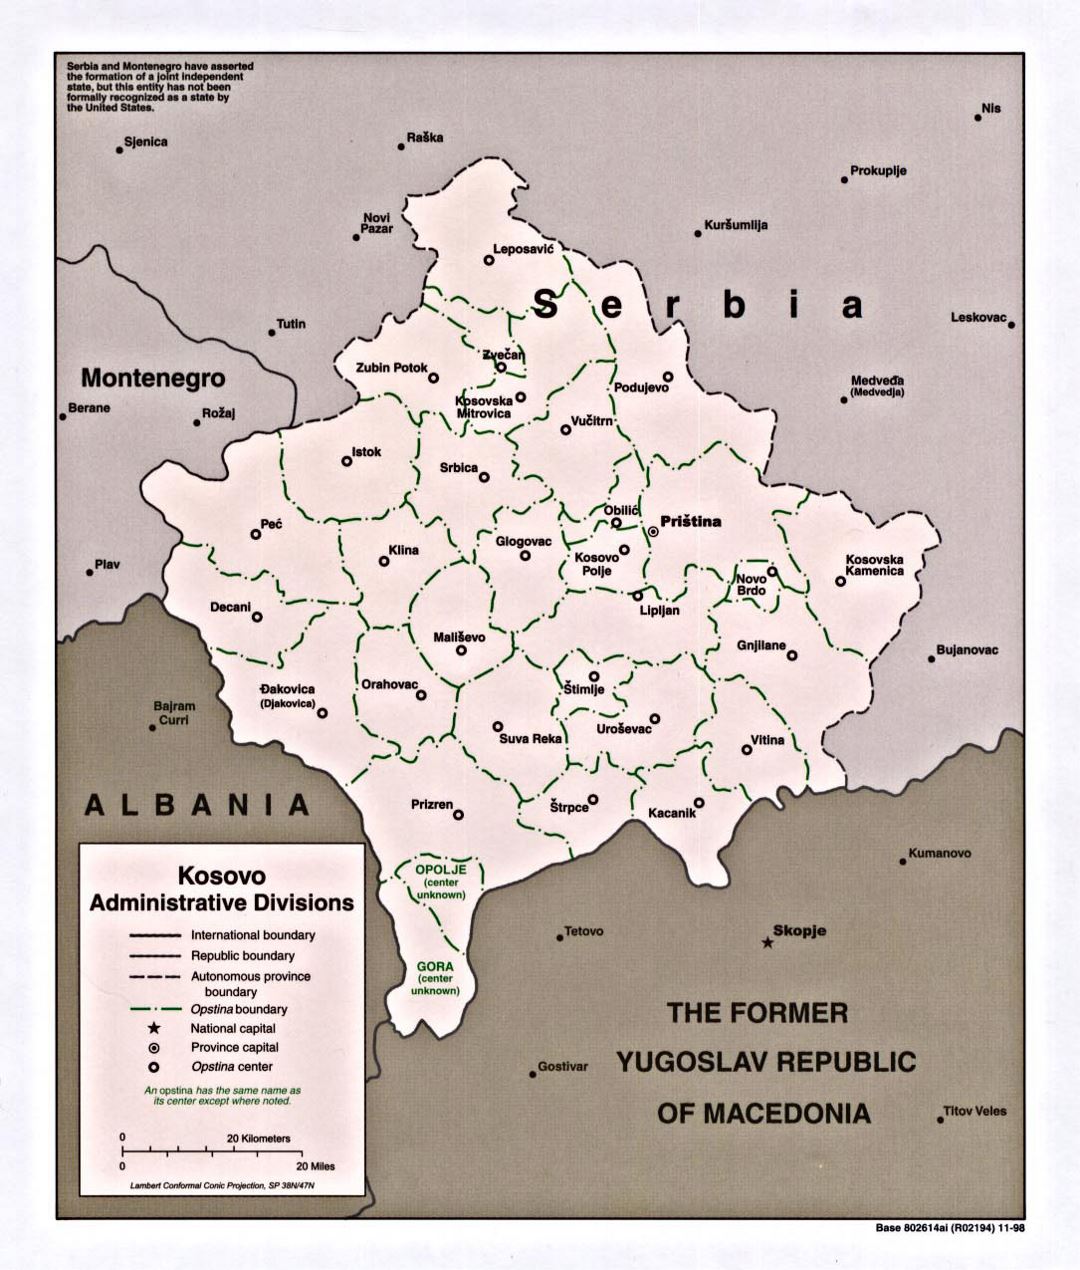 Mapa detallado de las administrativas divisiones de Kosovo - 1998